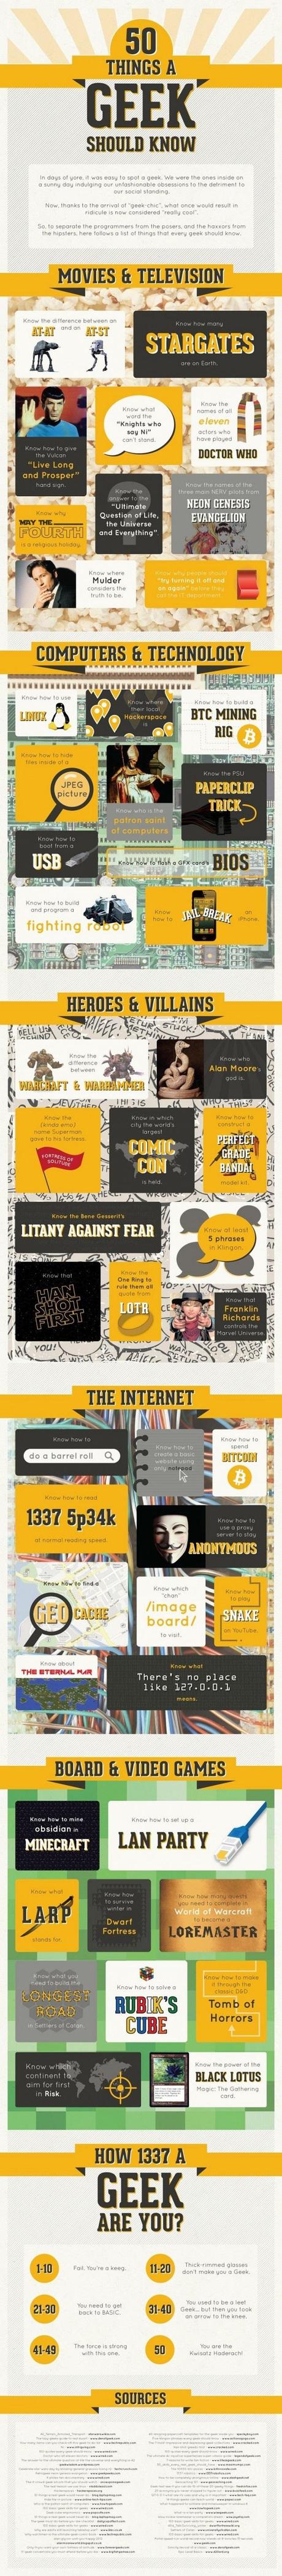 50 cosas que un Geek debería saber #Infografía #Internet #Tecnología #Geek